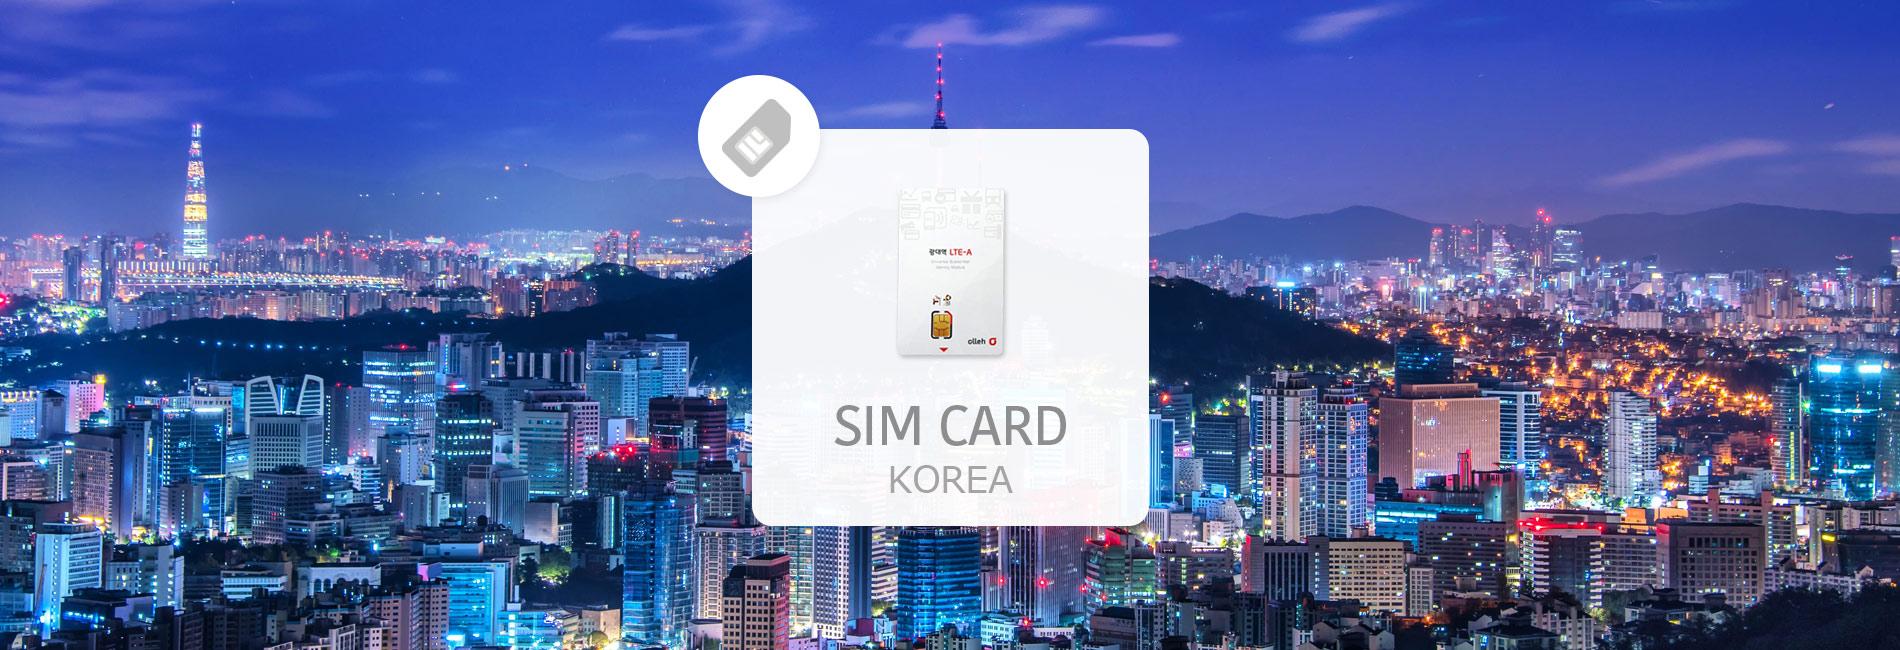 ซิมการ์ดไม่จำกัดสำหรับอินเทอร์เน็ตของเกาหลีใต้ (รับที่สนามบินอินชอน) ยกเลิกฟรี 1 วันก่อนวันที่เลือก